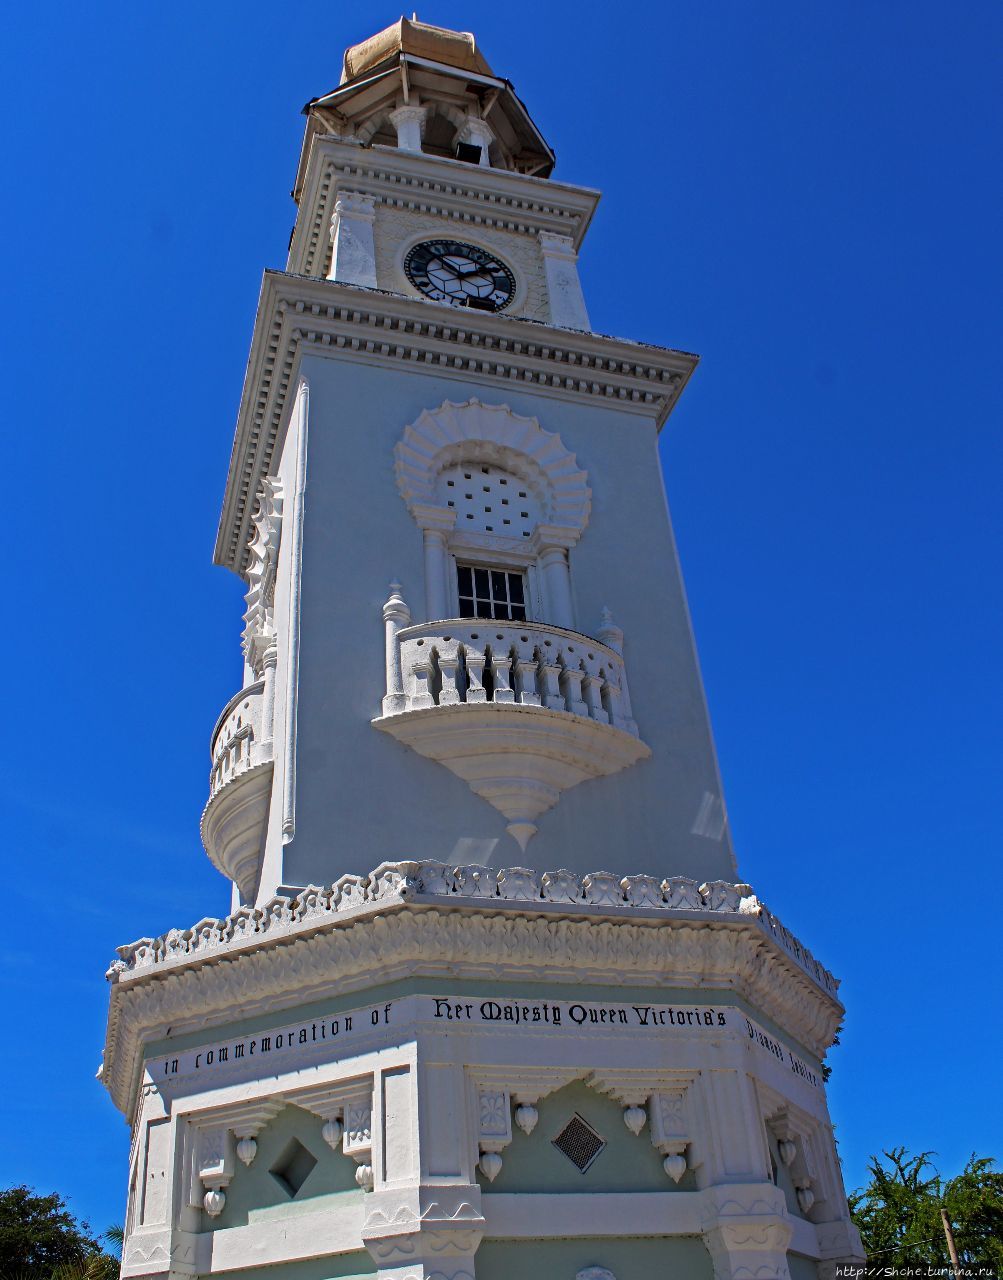 Часовая башня королевы Виктории - символ города Джорджтаун